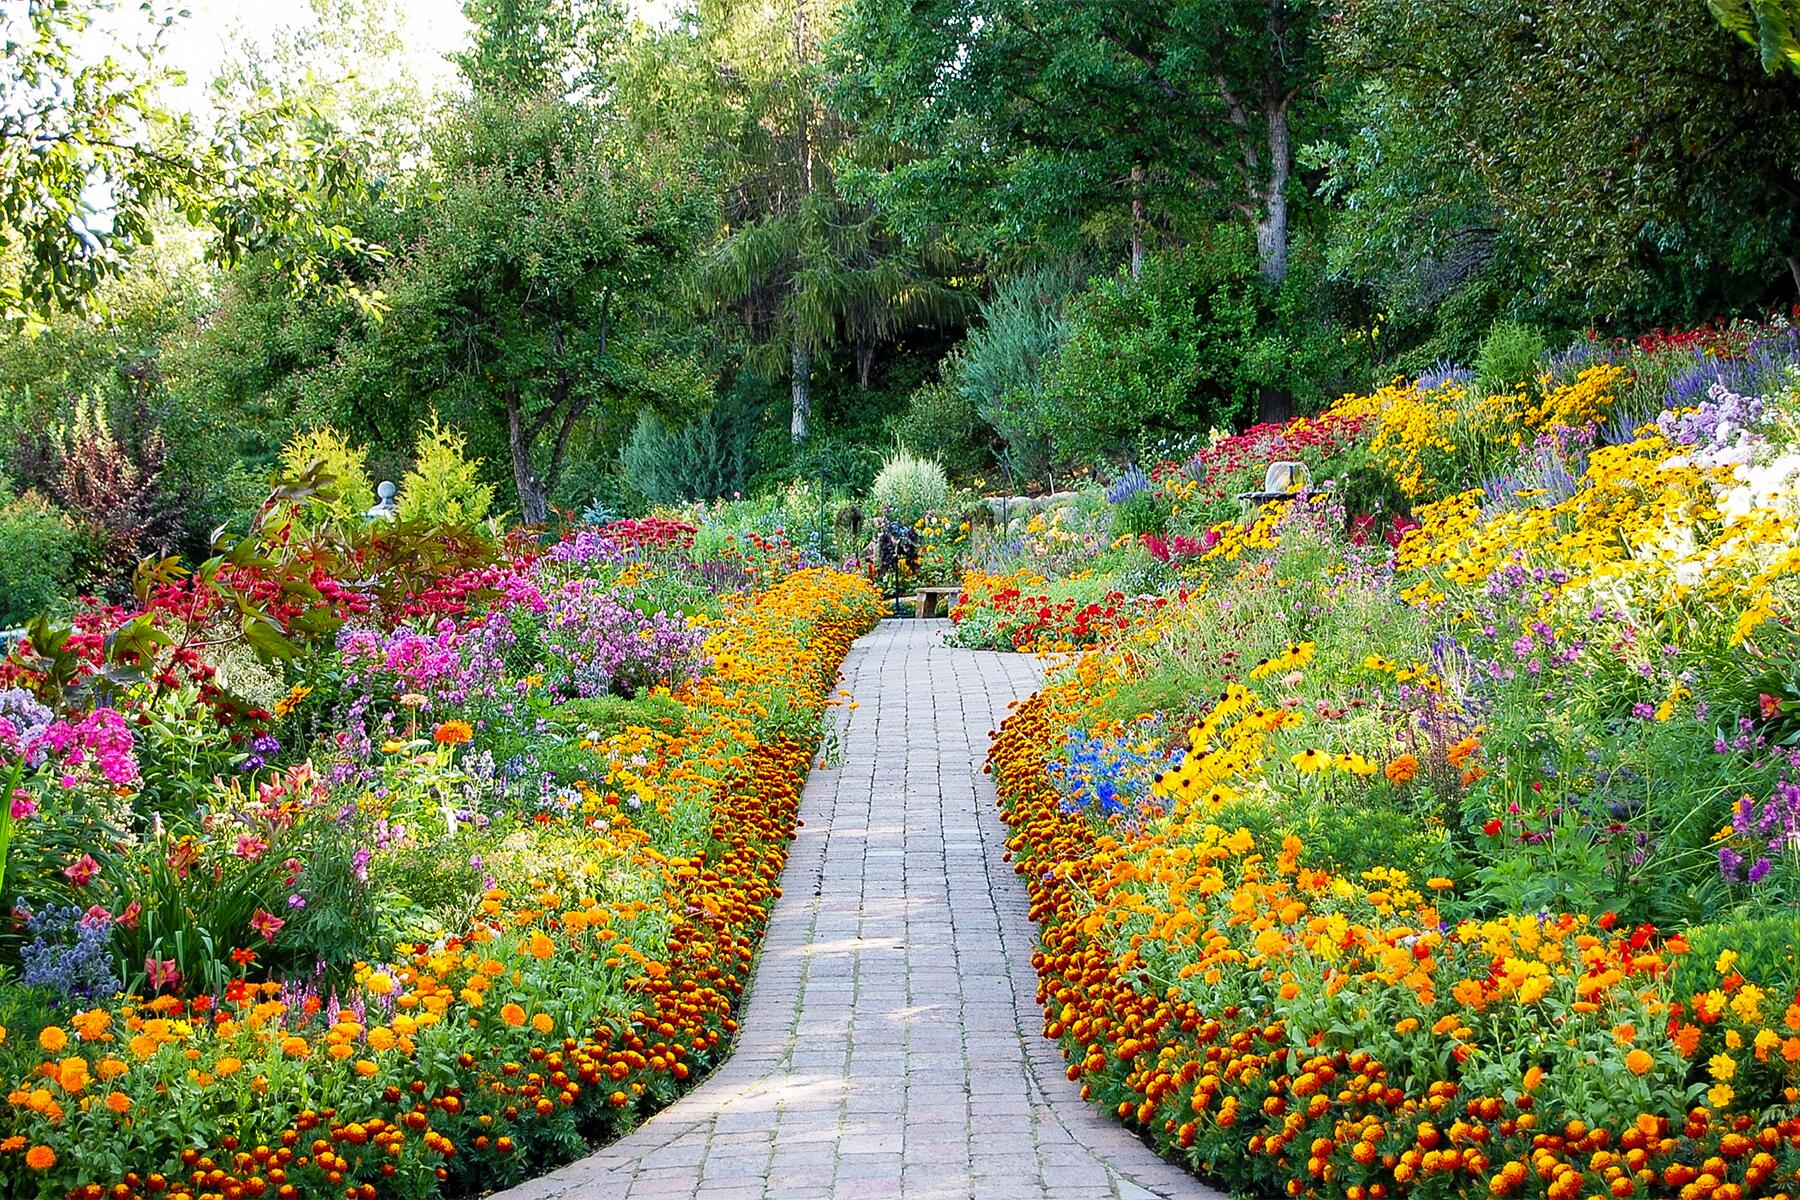 https://www.fodors.com/wp-content/uploads/2022/04/10-Flowers2022-Bibler-Gardens-Path.jpg